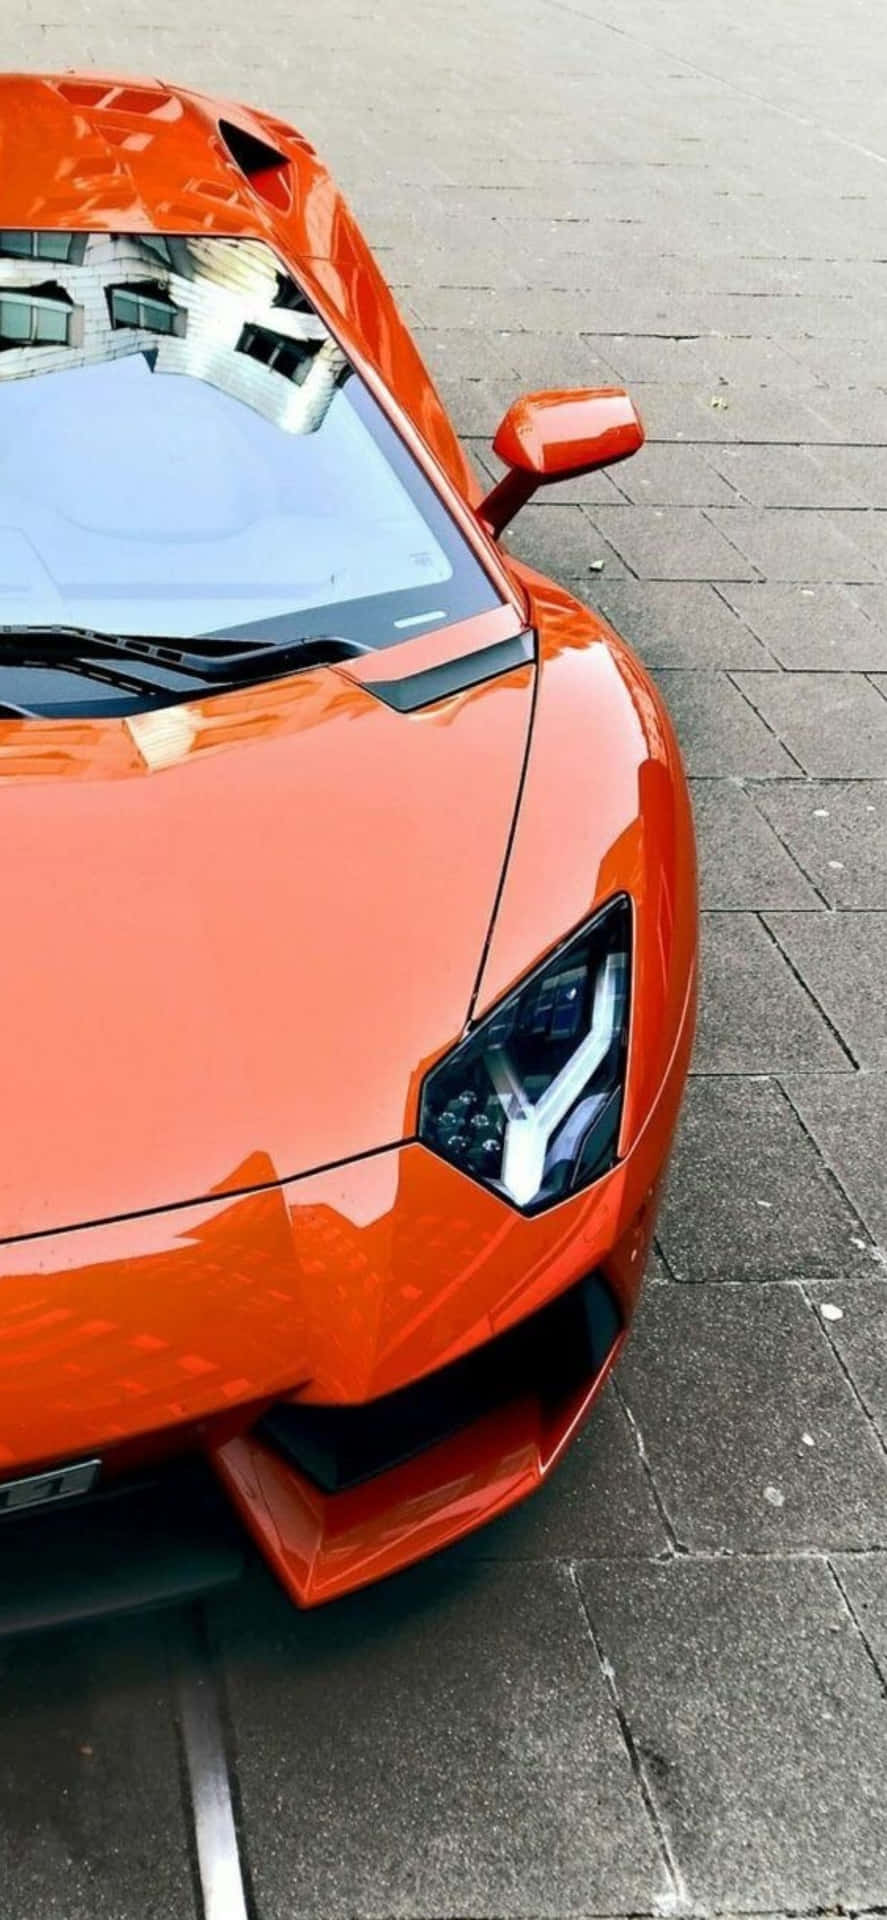 iPhone XS Max Lamborghini Orange Aventador Background